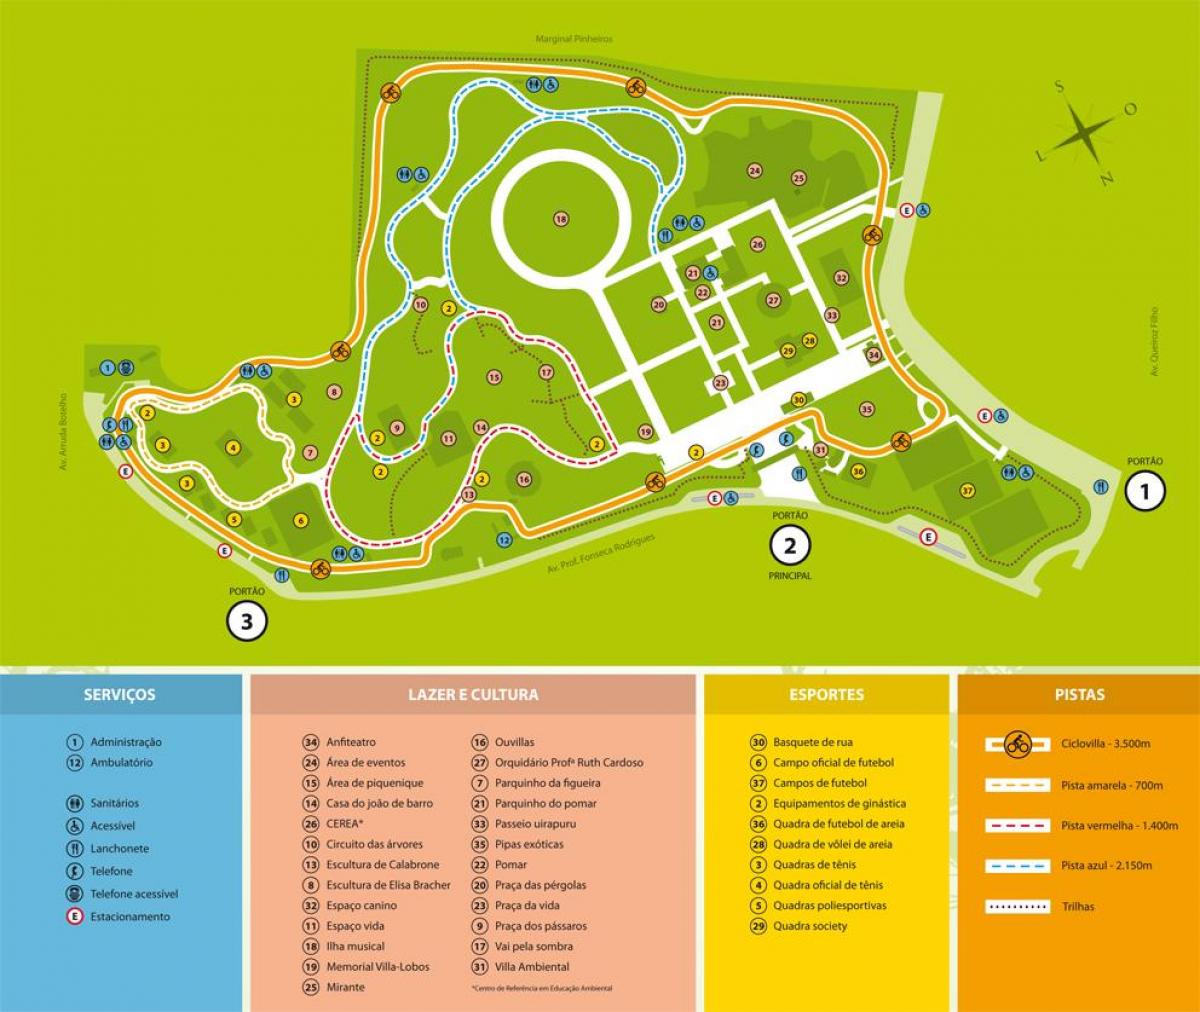 Bản đồ của Villa-Sói park